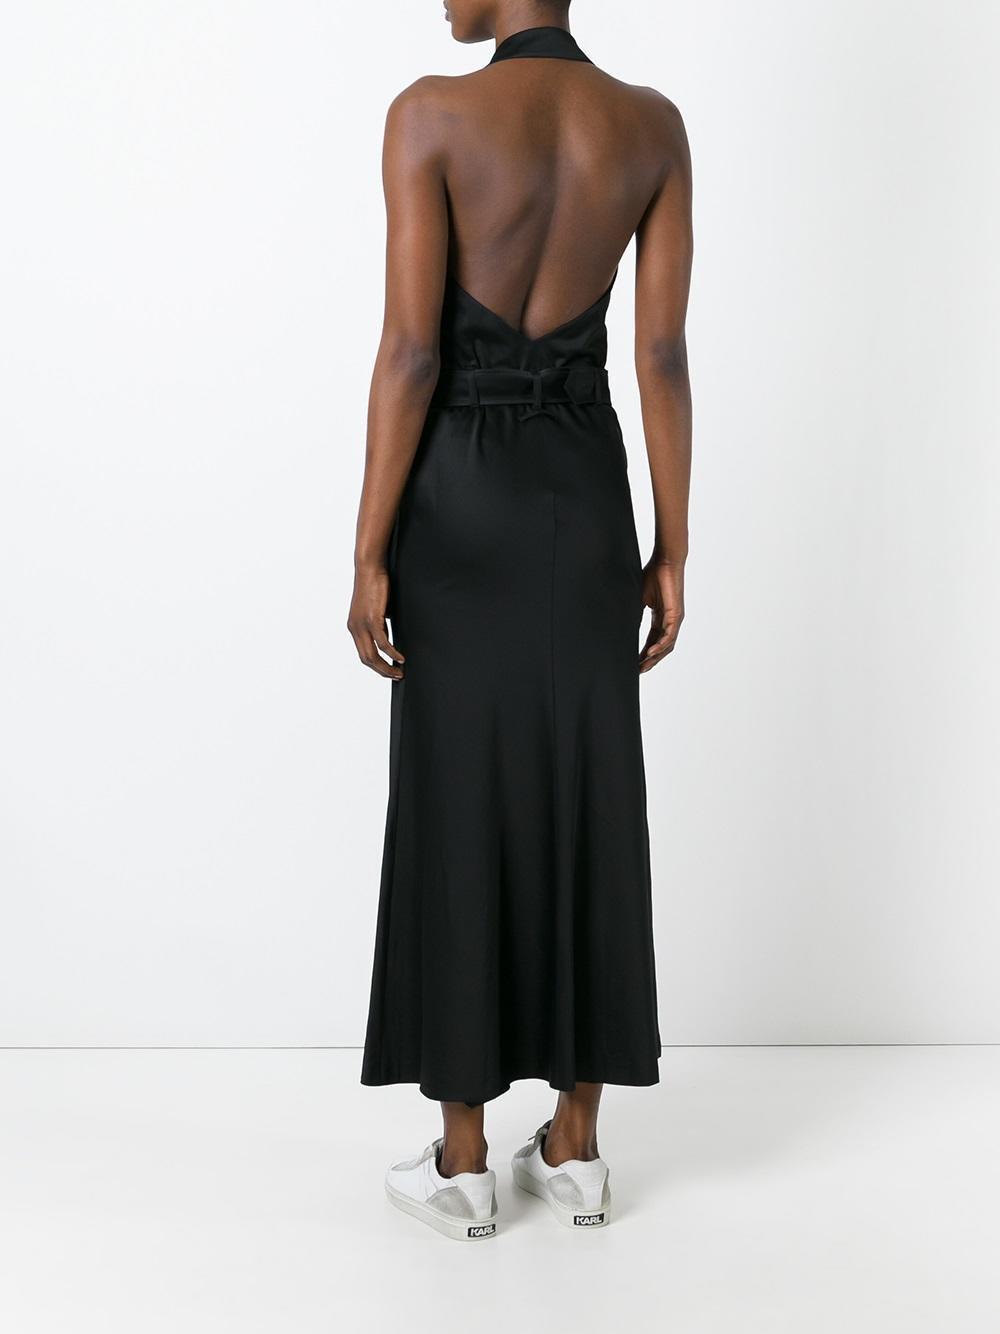 Jean Paul Gaultier Backless Halterneck Dress in Black - Lyst